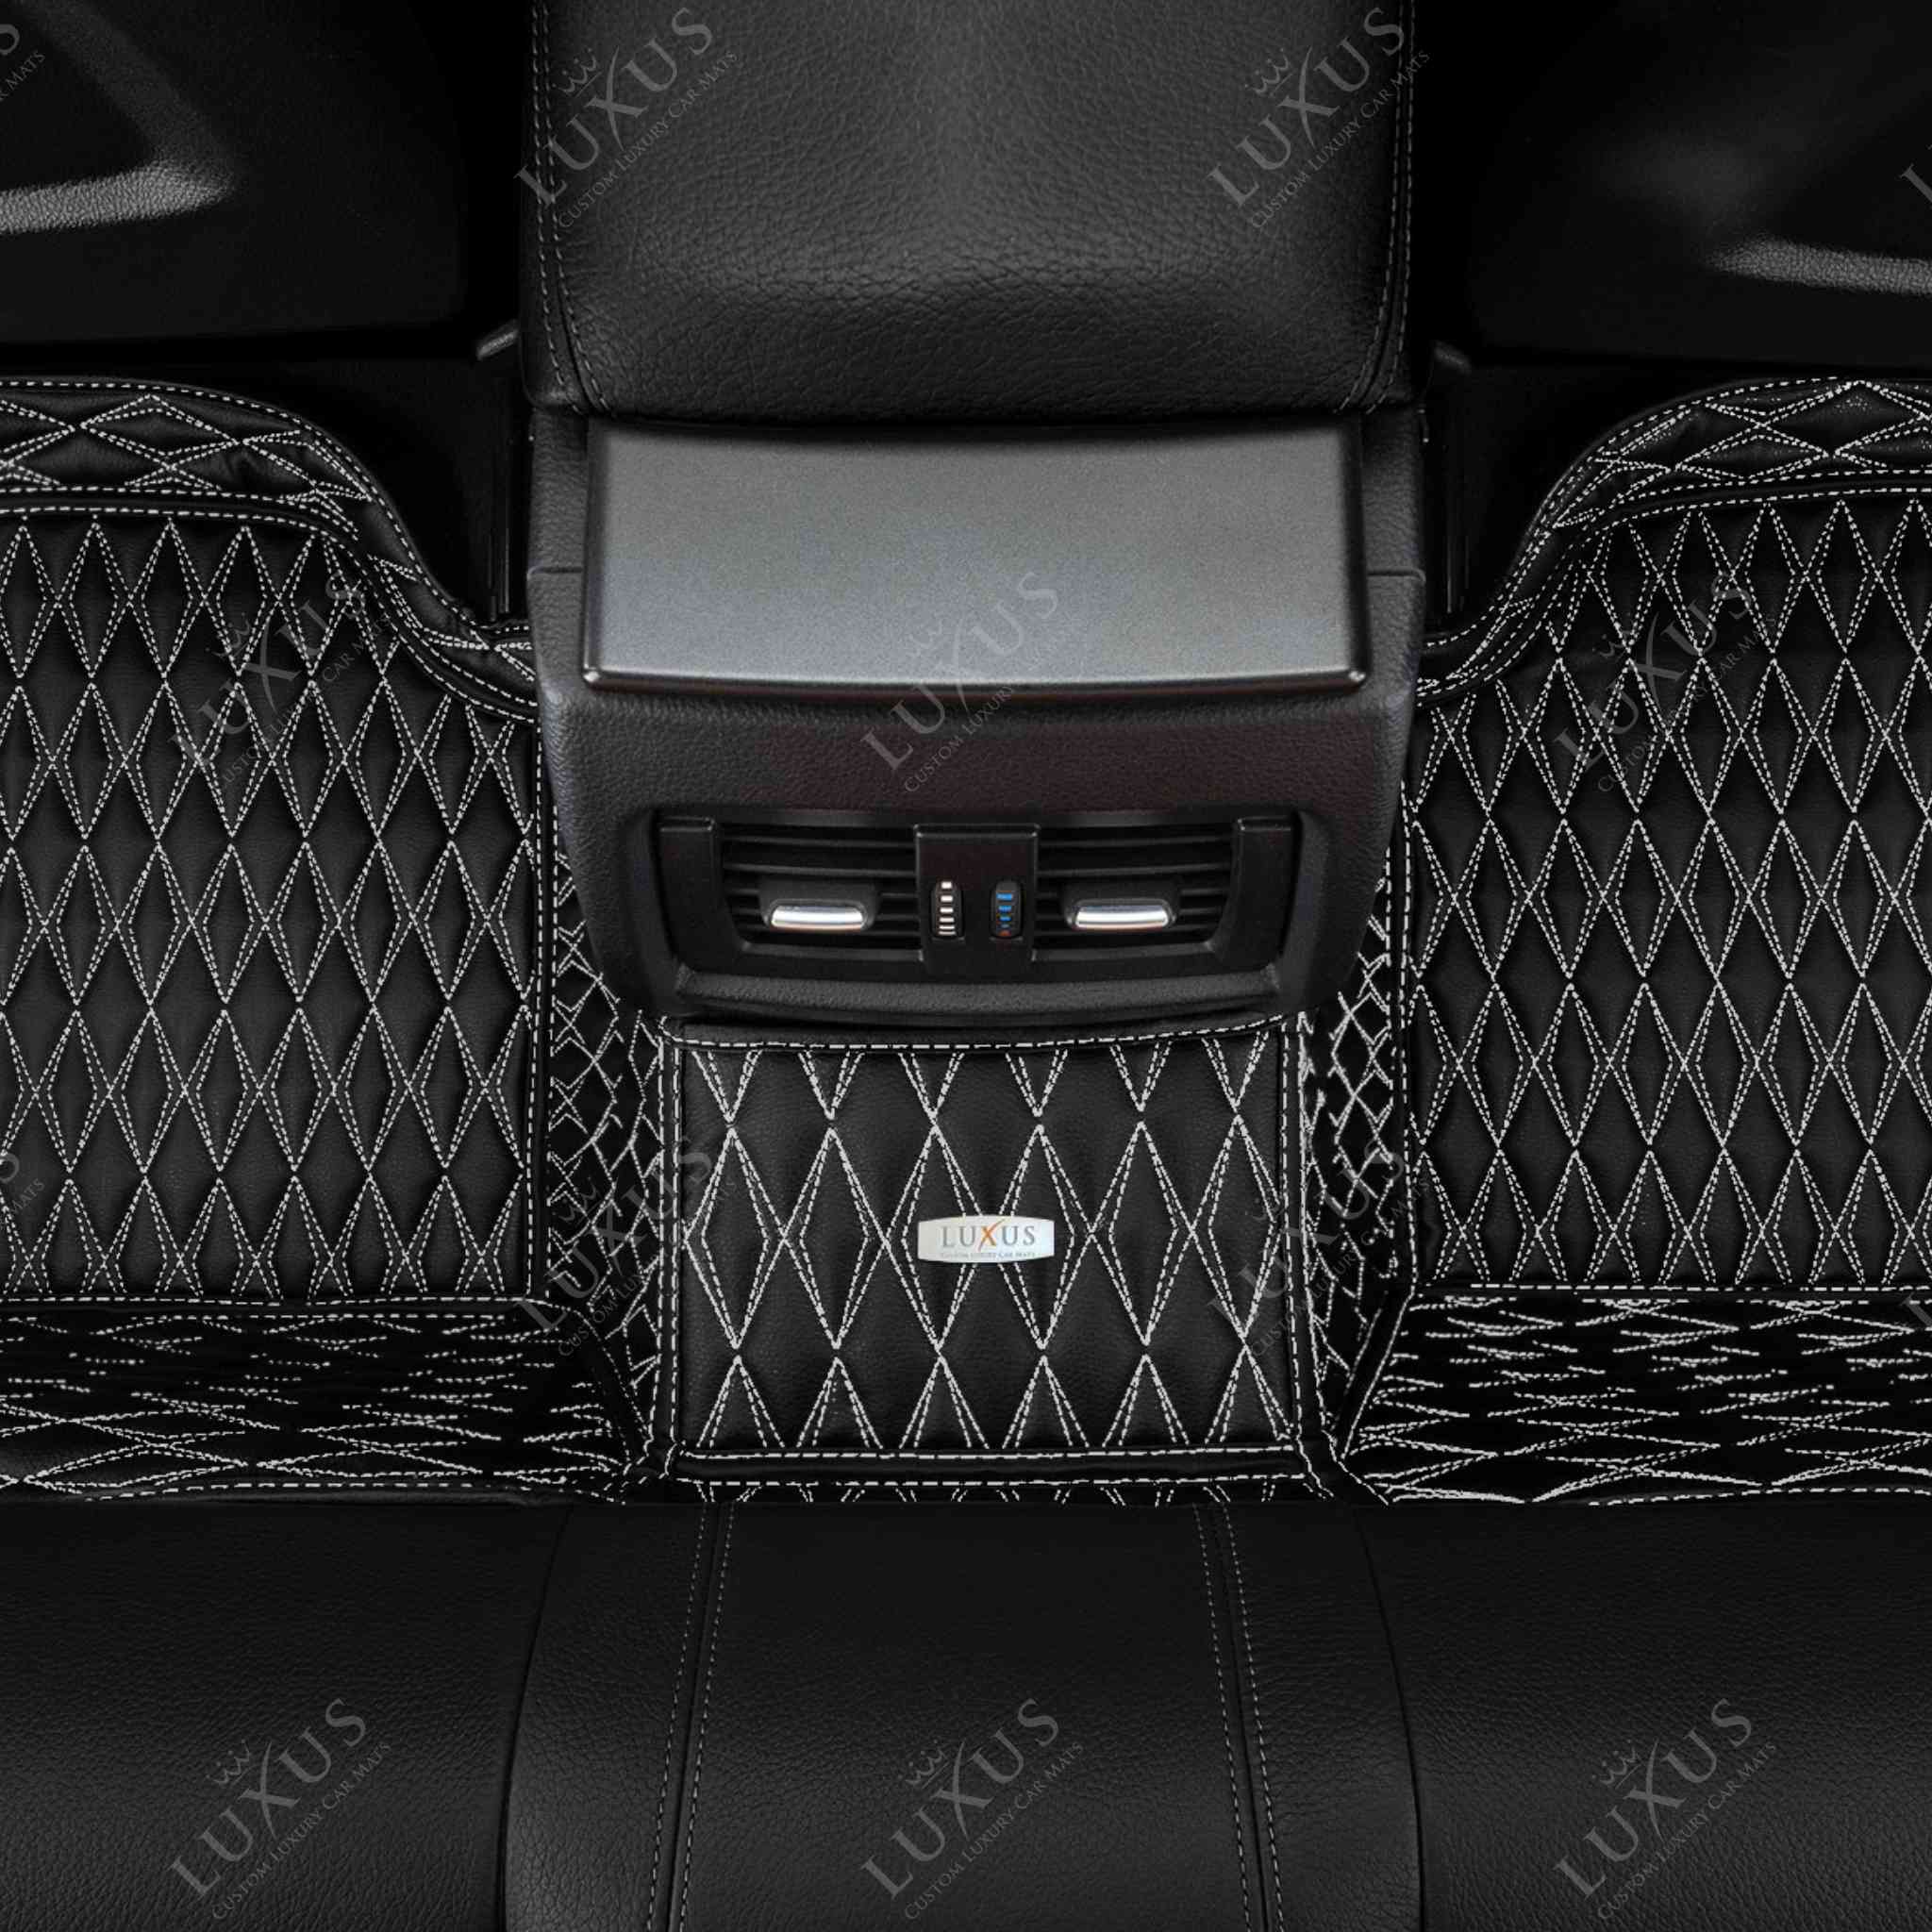 Twin-Diamond Black & White Stitching Luxury Car Mats Set